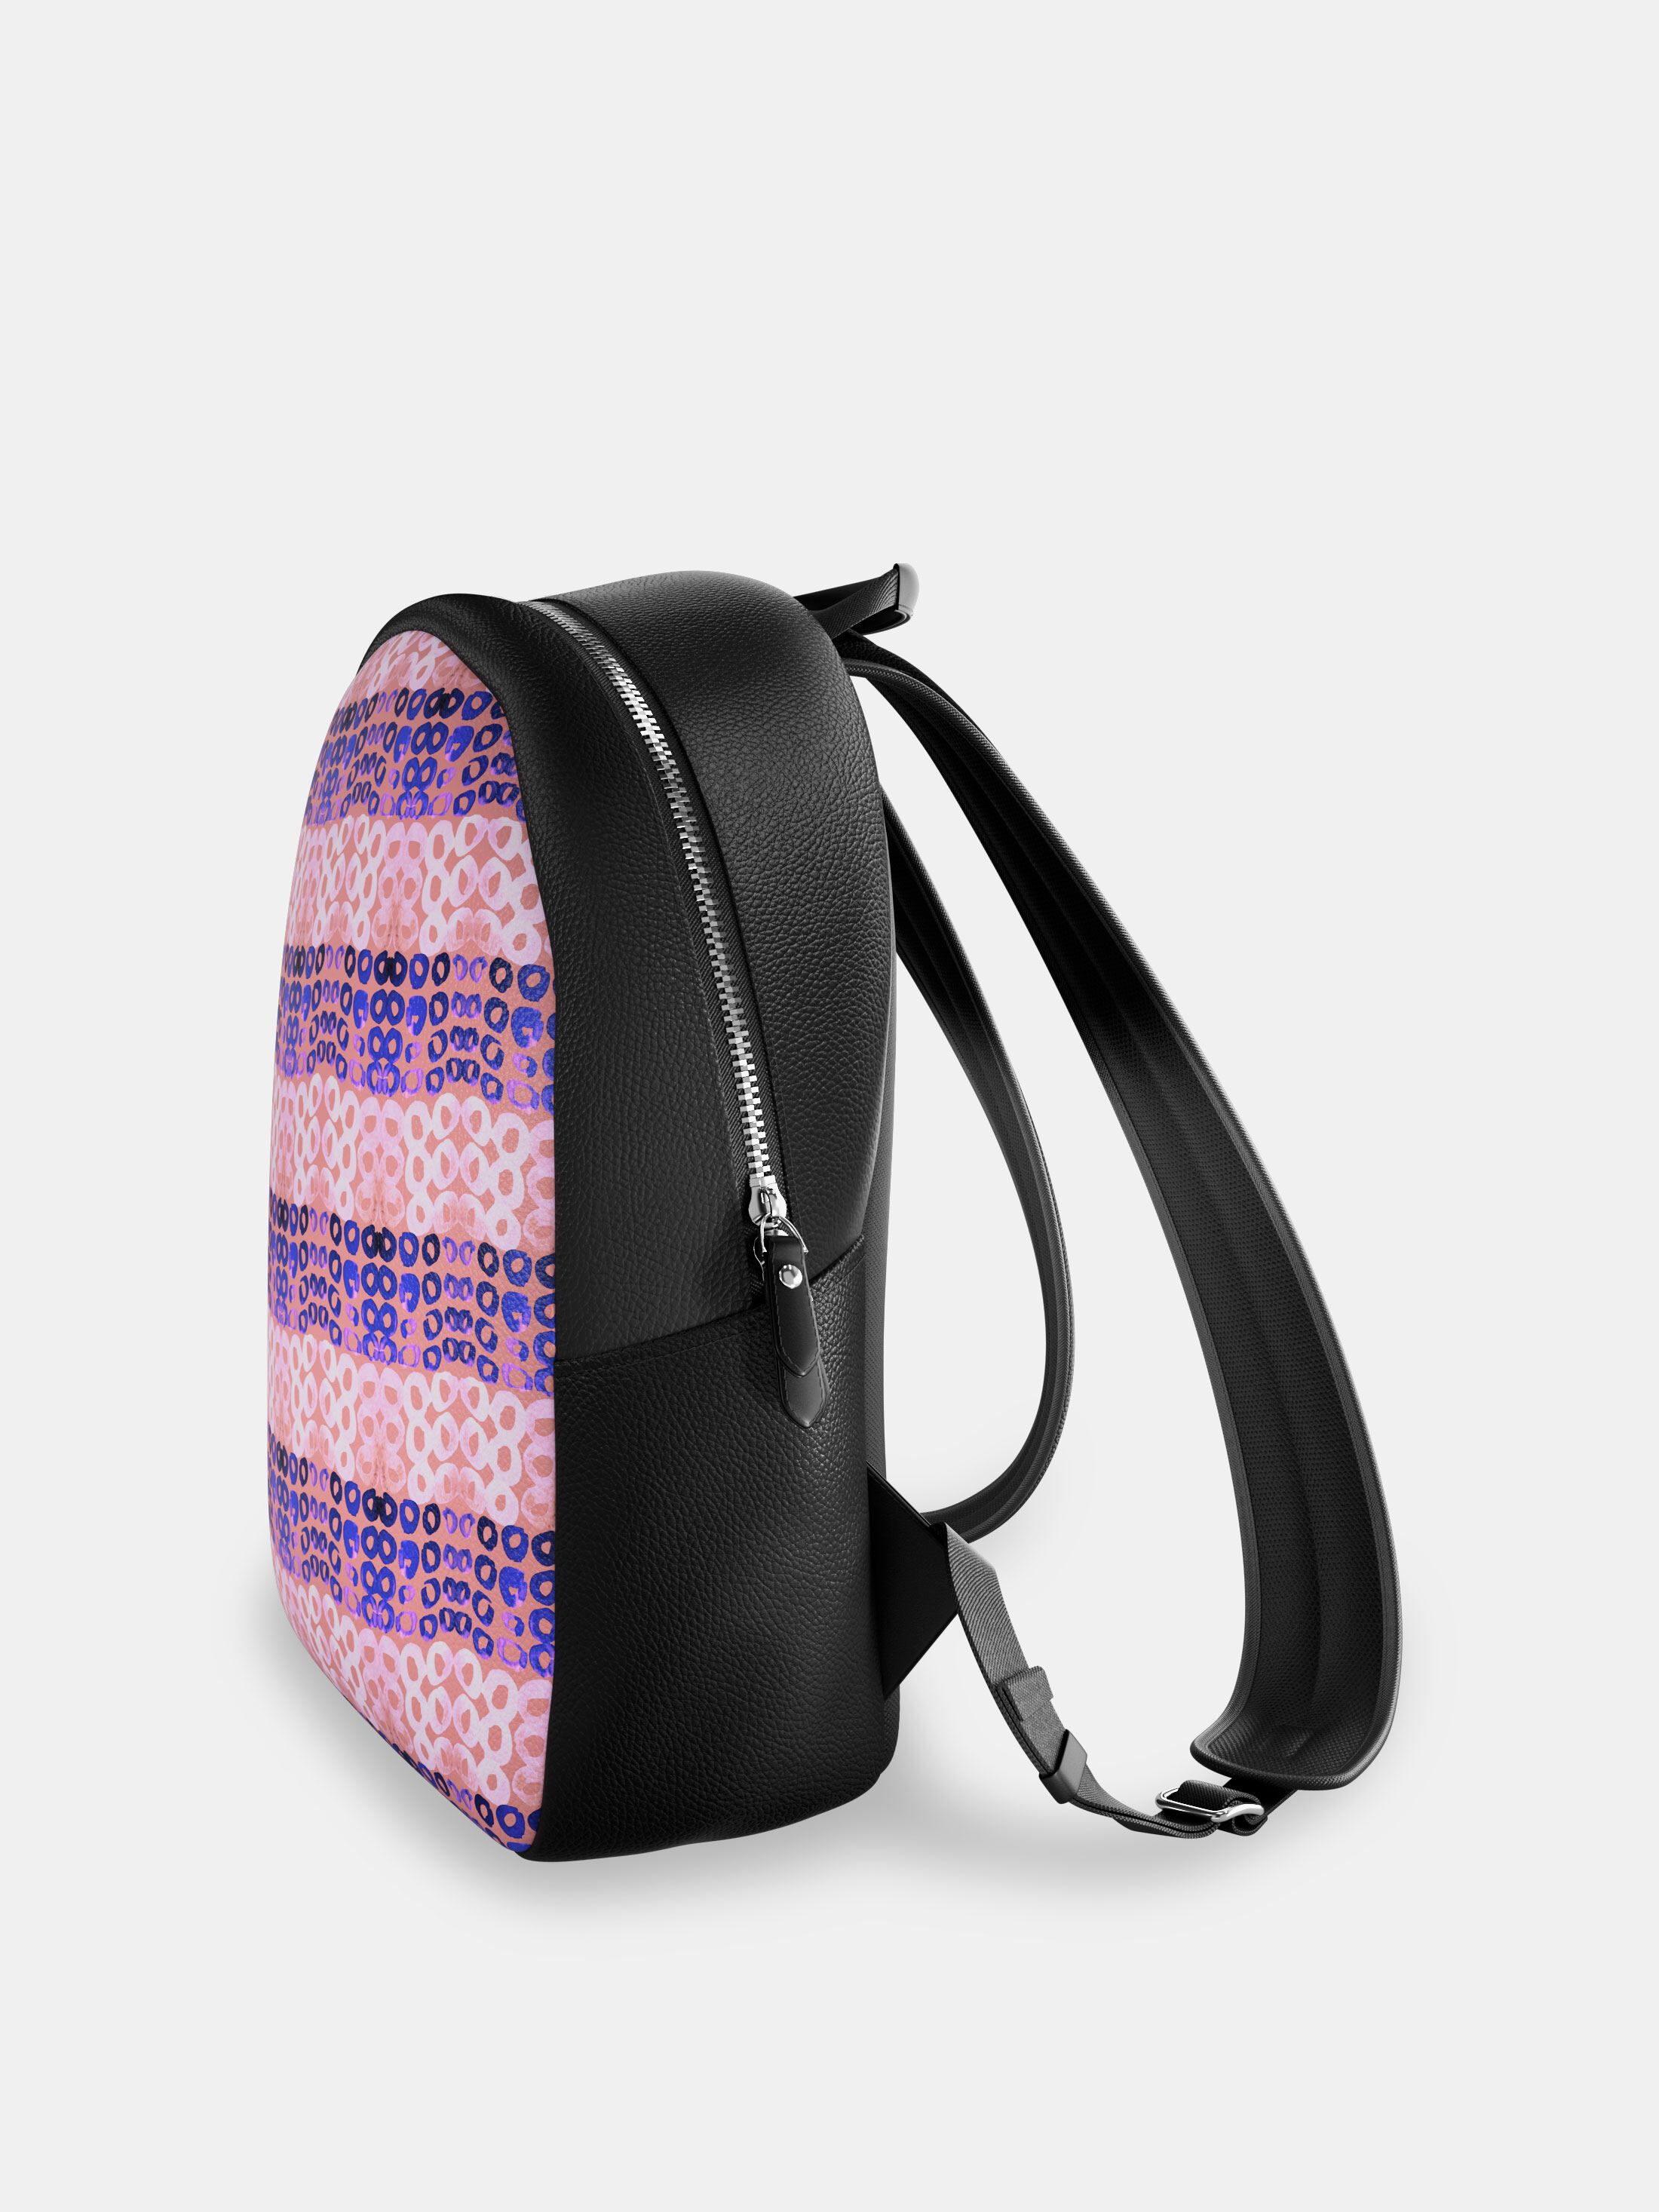 design your own custom rucksack